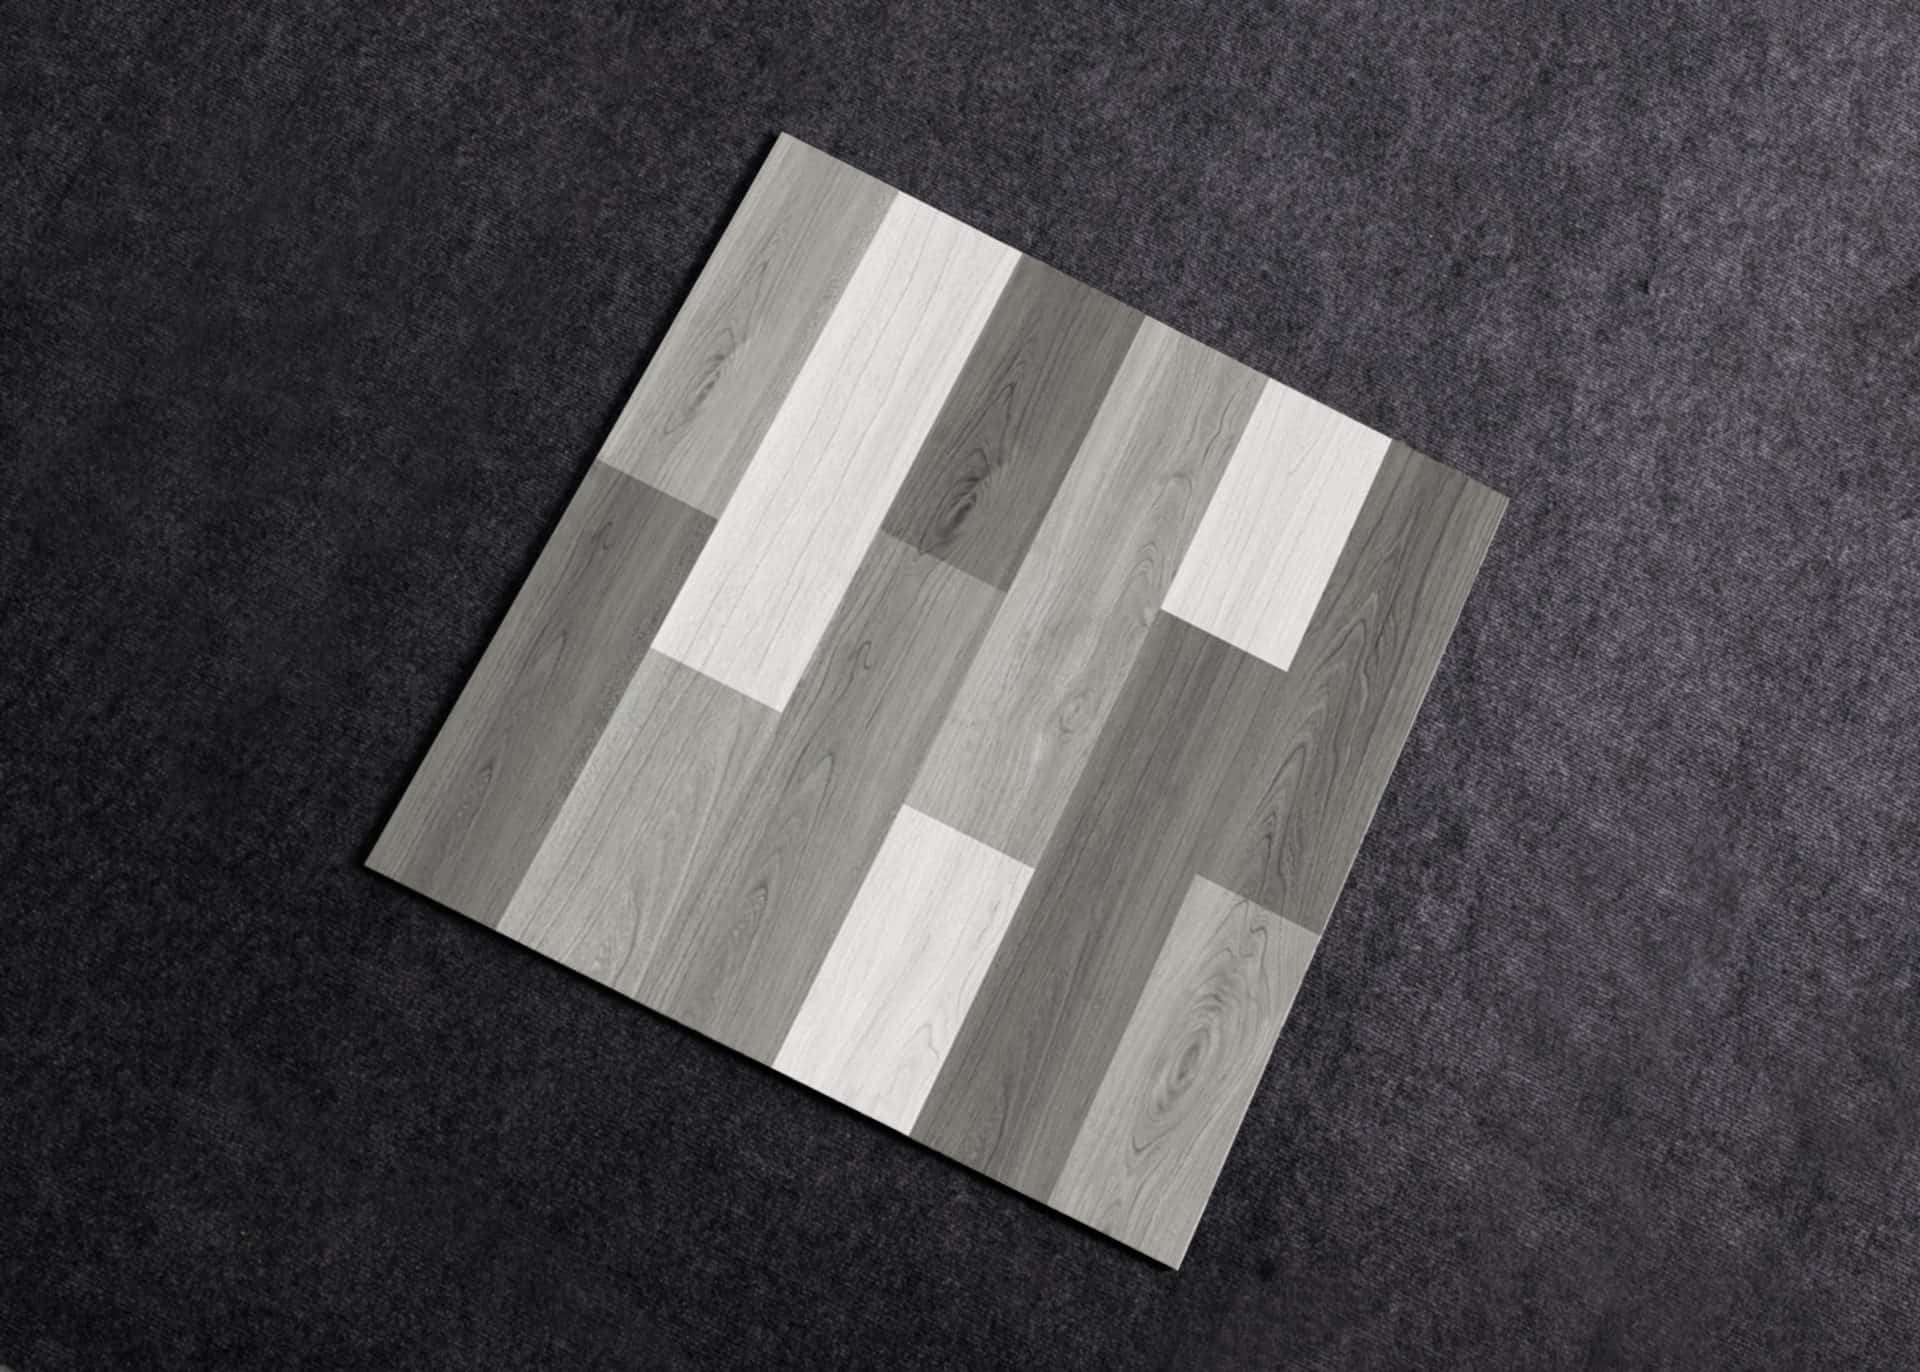 Mẫu gạch vân gỗ lát nền xám trắng mã PT 60009 mang đến không gian ấn tượng, tinh tế hơn